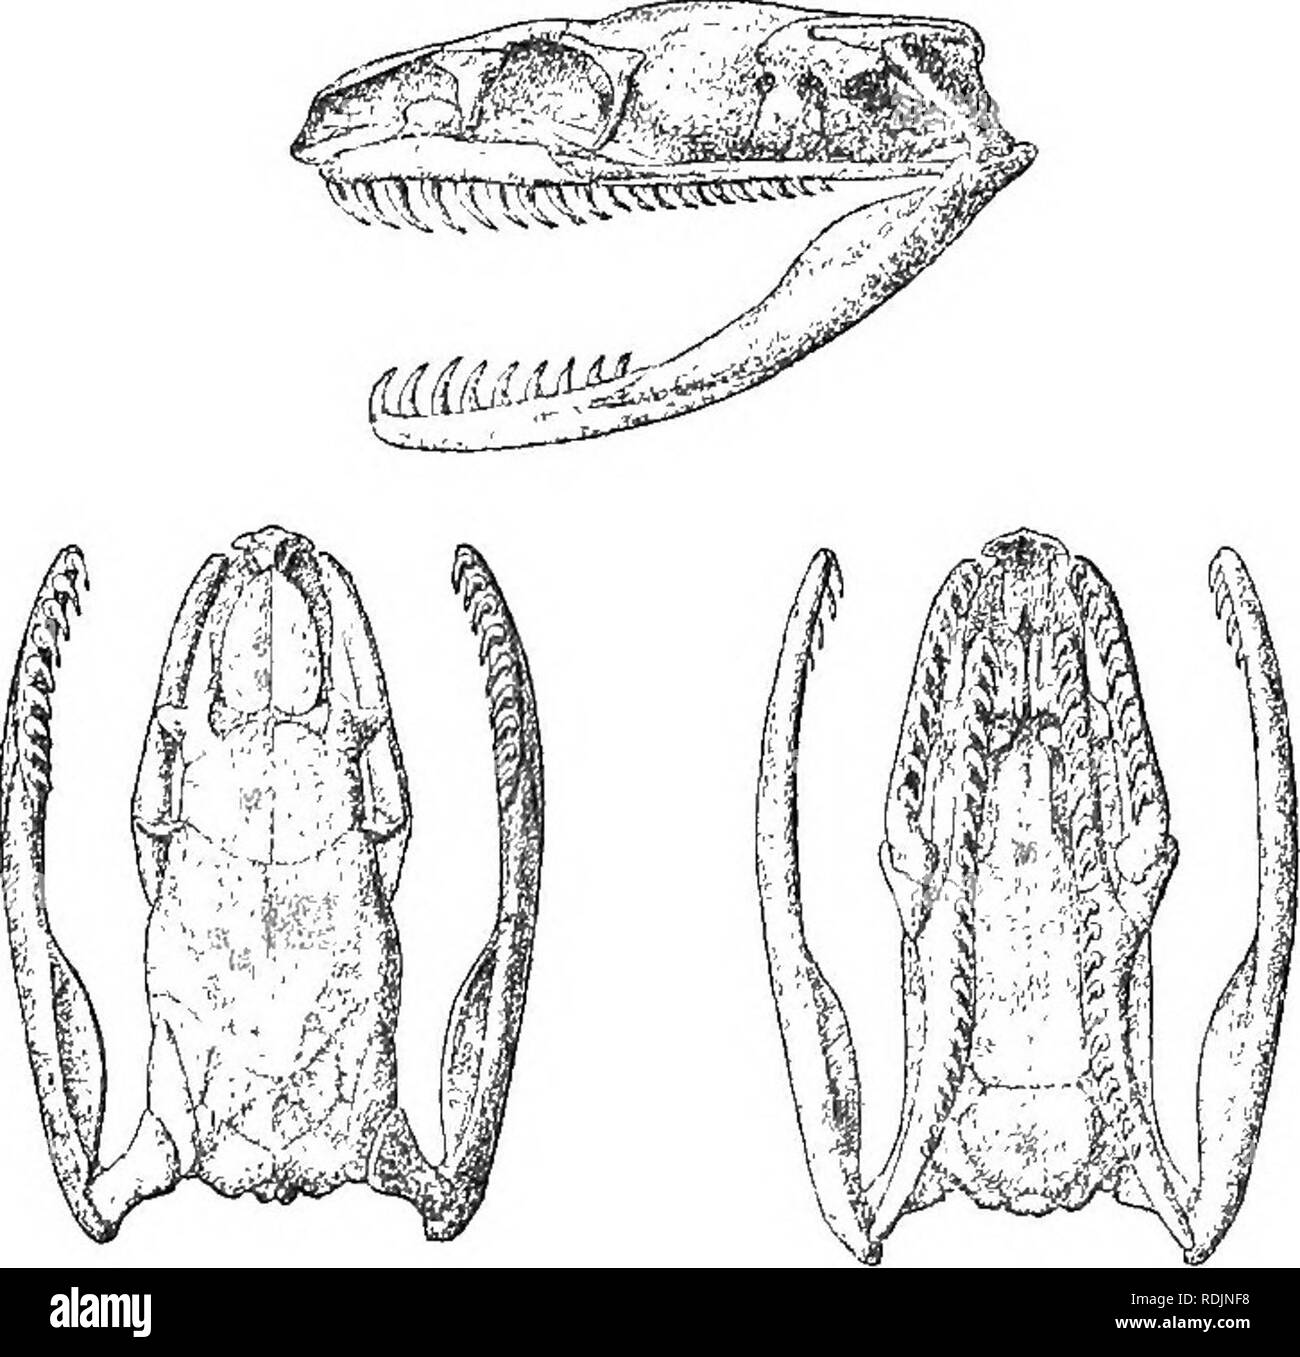 . Catálogo de las serpientes en el Museo Británico (Historia Natural) ... Las serpientes. 300 COLUBEID^. 112. ATEACTUS. '"^ Y (i'±  c V R, Atractus Wagler, Isis, 1828, pág. 741. rT) . Brachyorrhop, parte, Wagler, Syst. Amph. pág. 190 (1830). Parte Oalamaria., 8cMeg. Phys. Serp. ii. pág. 25 (1837). Rabdosoma, parte, Bum. ^ Bibr. M&amp;m. Ac. 8c. xxiii. 1853, pág. 440, y ERP. Q&amp;n. vii.p. 91 (1854) ; Gunth. Cat. Col. 8n. p. 10 (1858) ; Jan, Arch. Zool. Anat. Phys. ii. 1862, pág. 10. Isoscelis, Qunth. I. e. p. 204. Adelphicos, Jan, I. C. p. 18 ; Socourt, Misisipí Sc. Me.r., Rept. pág. 553 (1888). Ehegnops, Cope, Pro Foto de stock